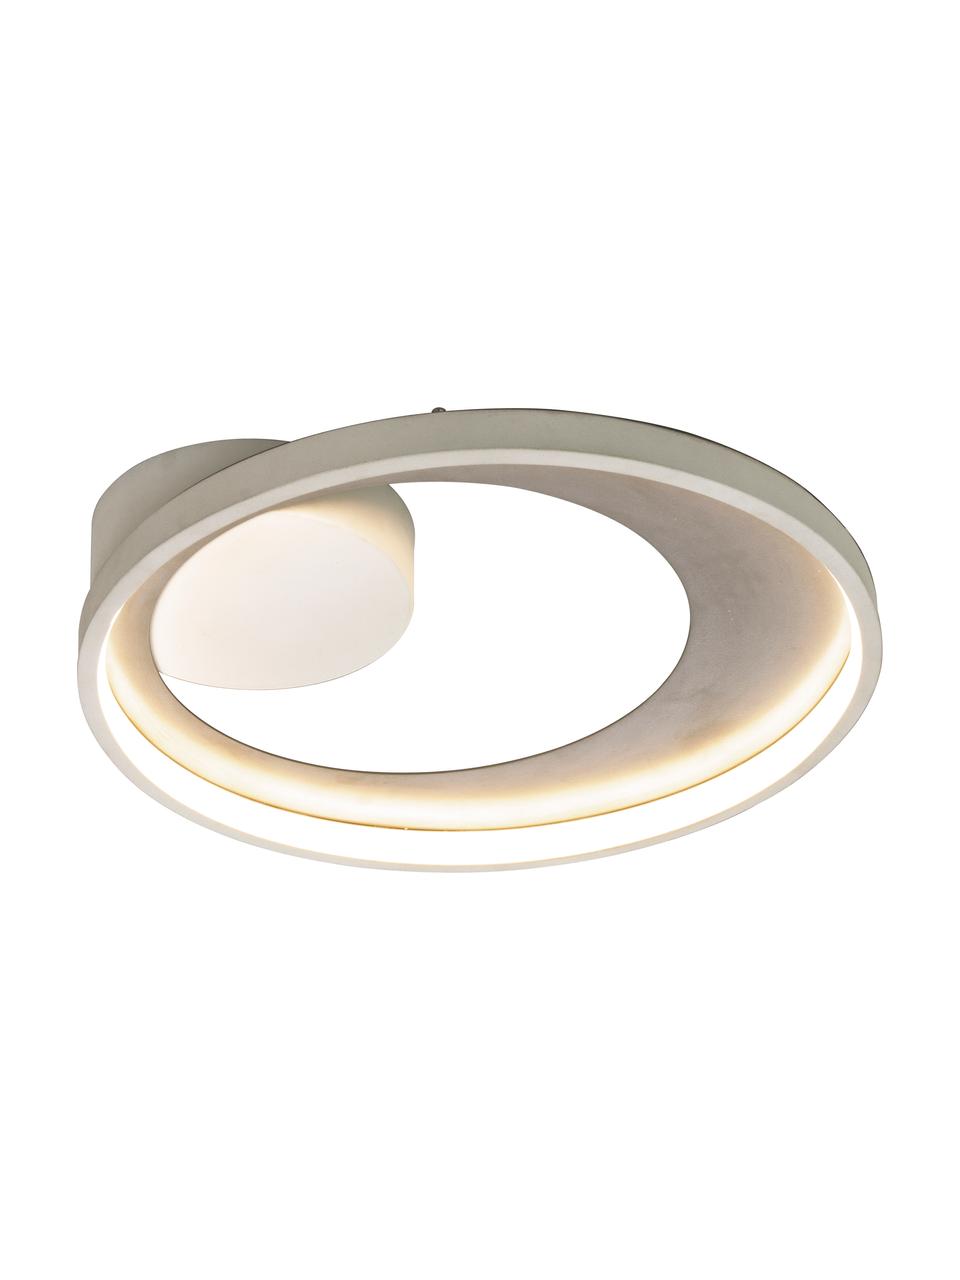 Dimmbare LED-Deckenleuchte Carat in Weiß/Silber, Lampenschirm: Aluminium, beschichtet, Baldachin: Metall, beschichtet, Weiß, Silberfarben, Ø 36 x H 7 cm